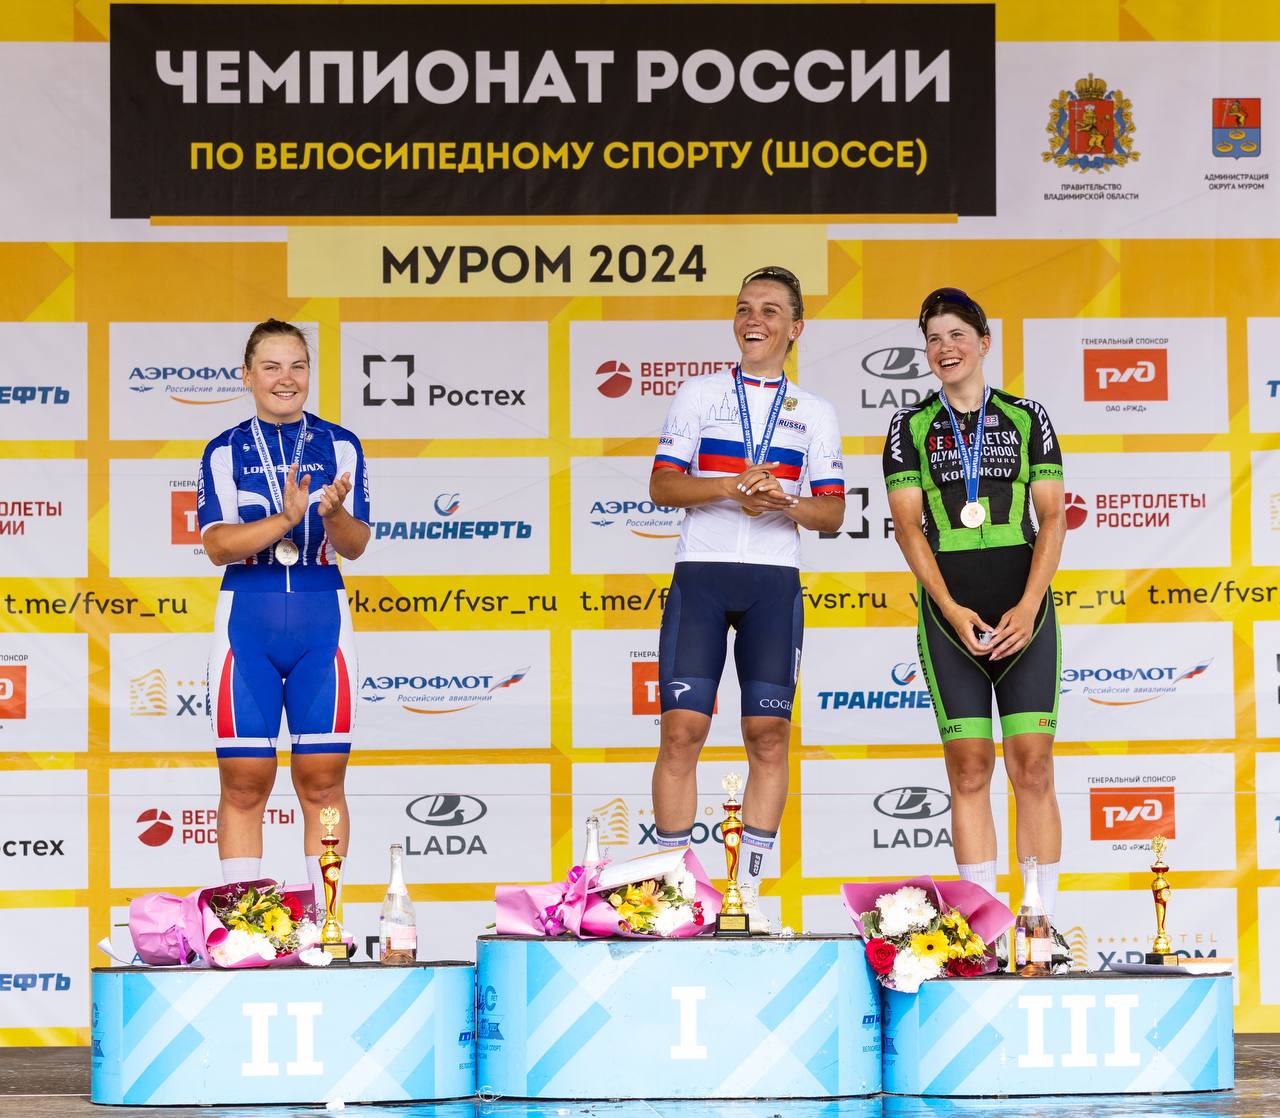 Тамара Дронова выиграла чемпионат России по велоспорту